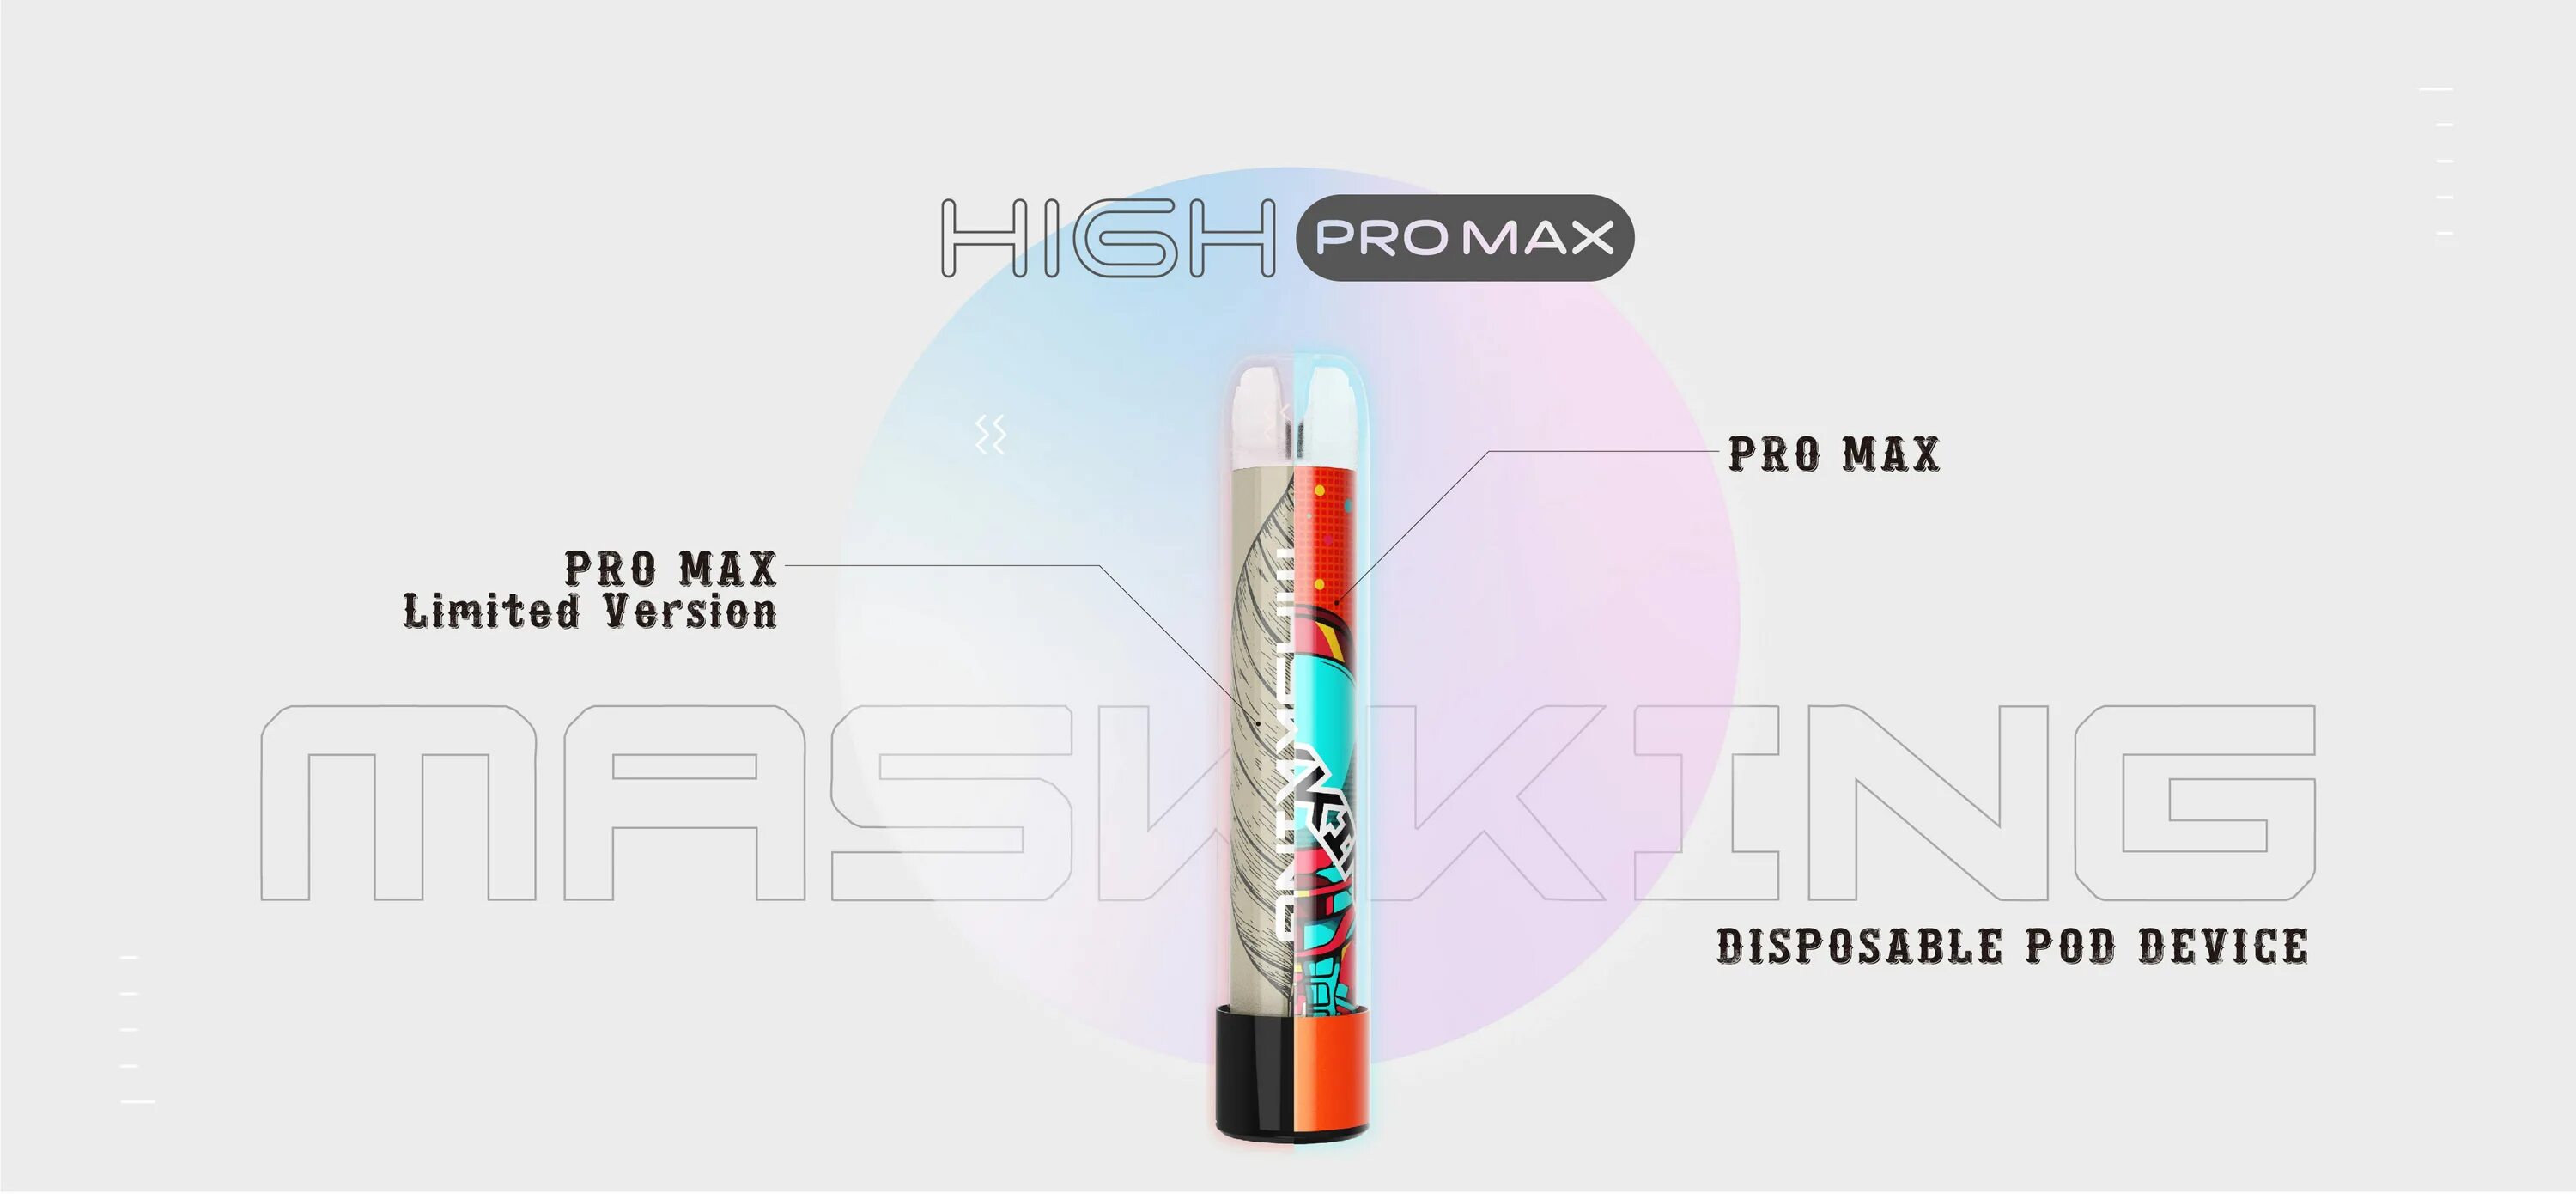 Макс про производитель. Masking High Pro Max 1500 затяжек. Masking Pro Max электронная сигарета. Maskking Pro Max эскимо (850 Mah 1500 тяг. 4,5 Мл., 2%, 20мг.). Maskking Pro Max (1500 тяжек).